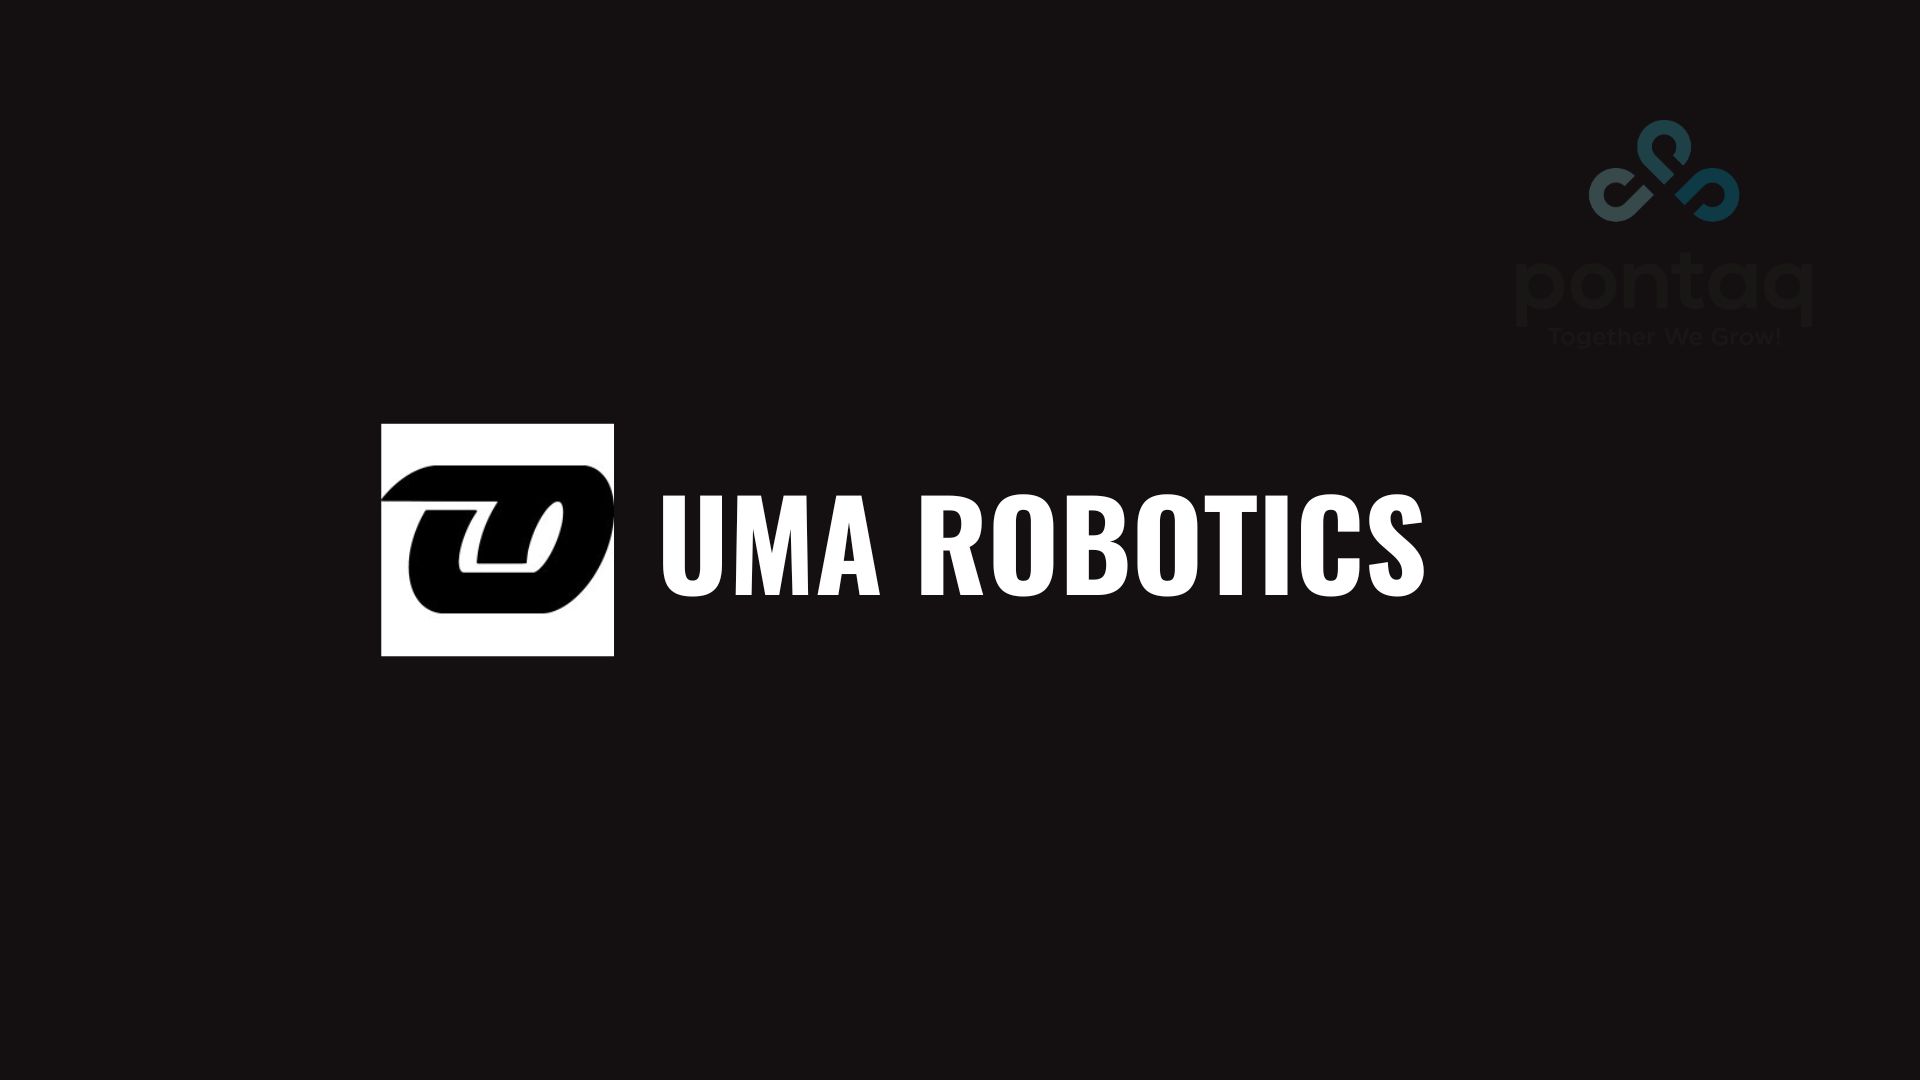 UMA ROBOTICS